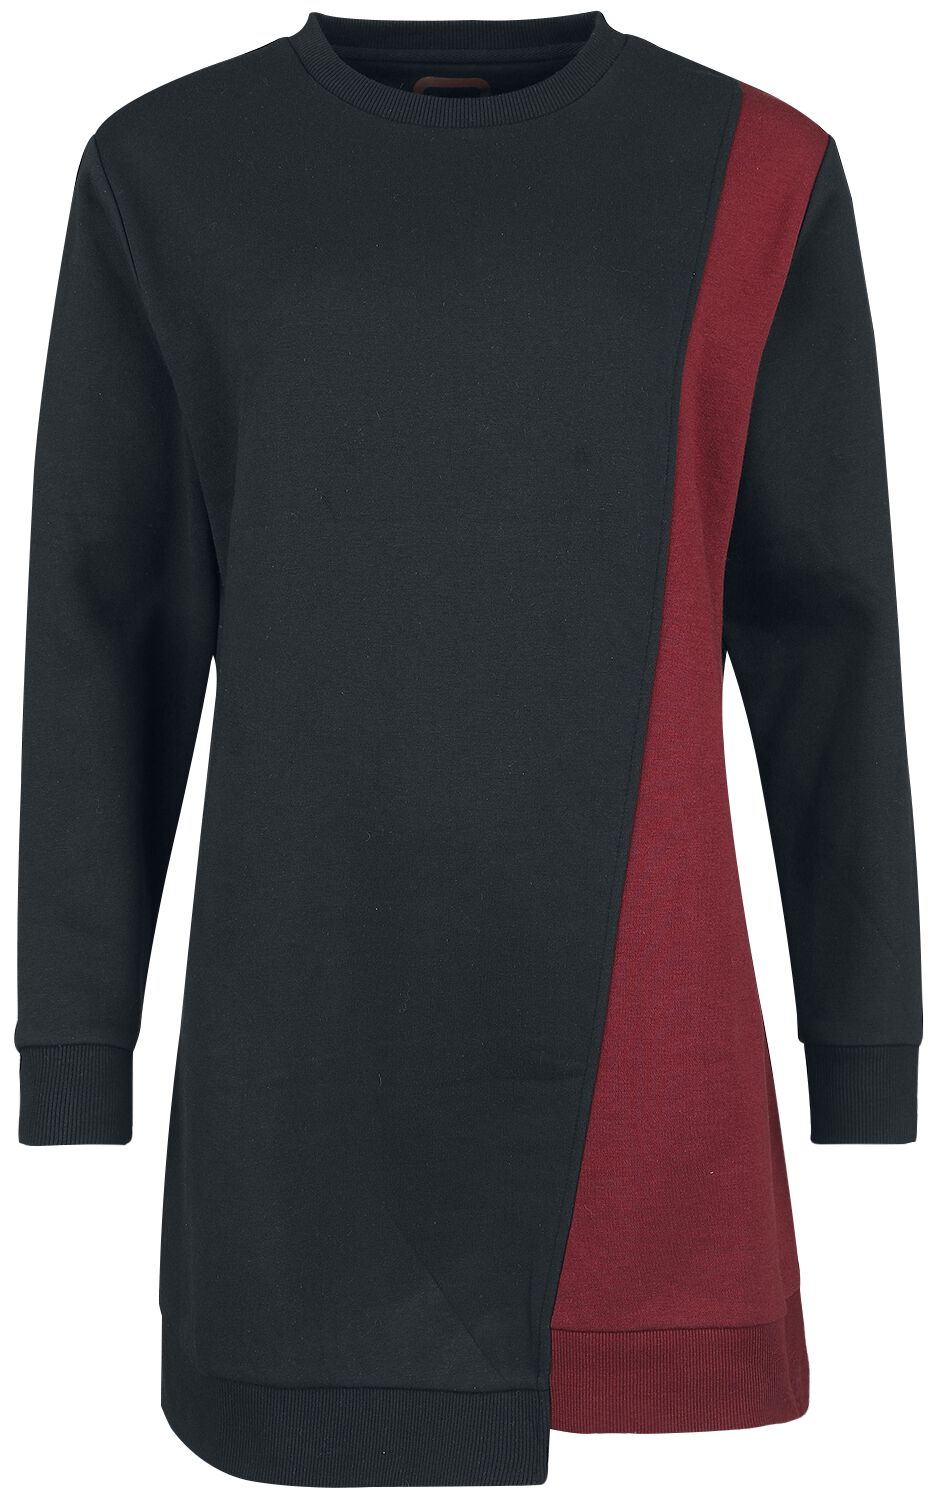 Kurzes Kleid für Damen  schwarz/dunkelrot Sweatshirt Dress with asymmetrical Cut von RED by EMP